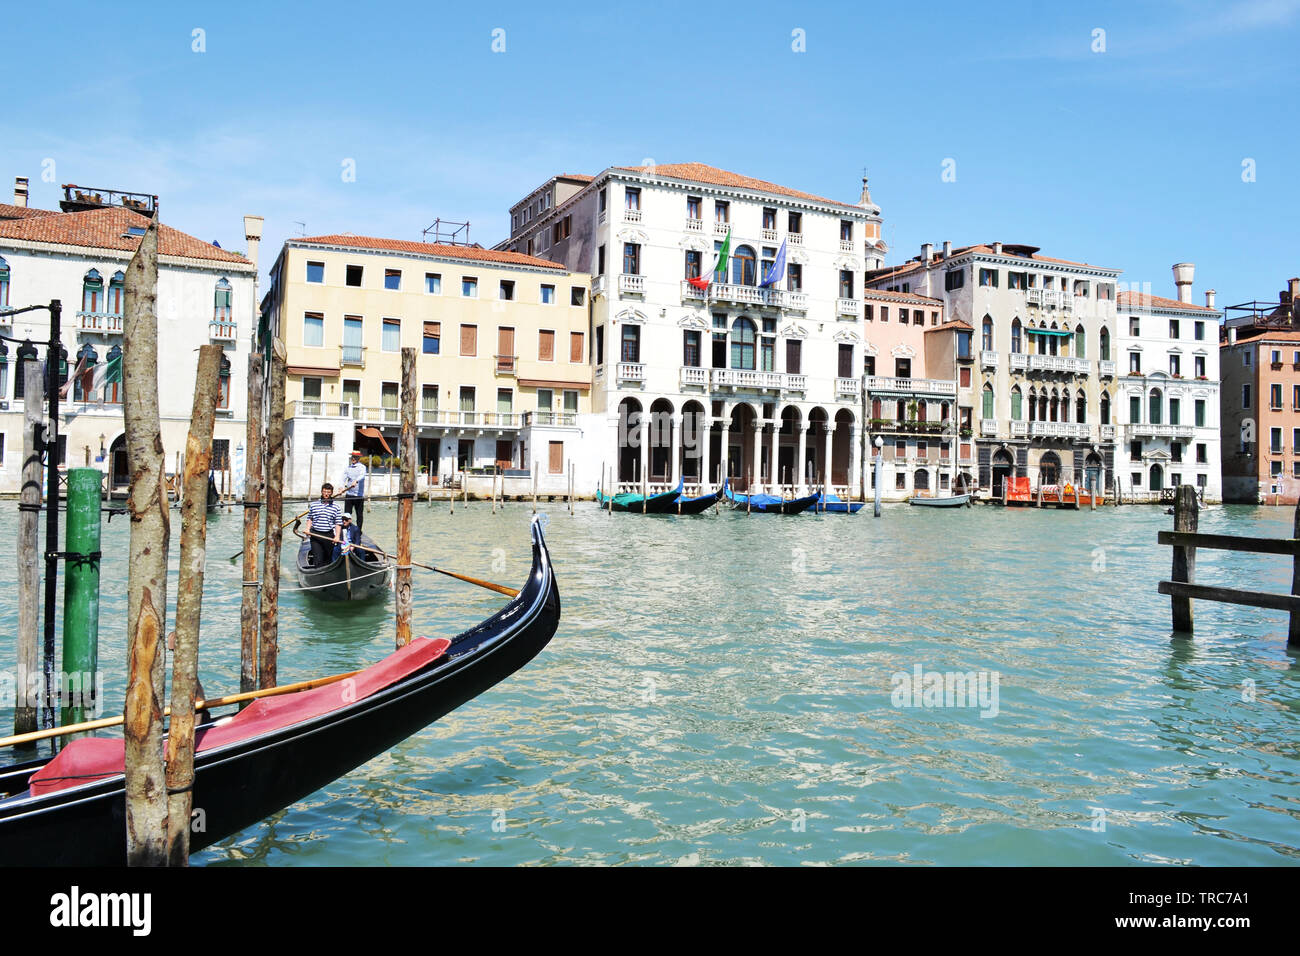 Venise/Italie - 8 mai 2015 : vue panoramique sur le Grand canal vie en ville dans une journée de printemps ensoleillée. Banque D'Images